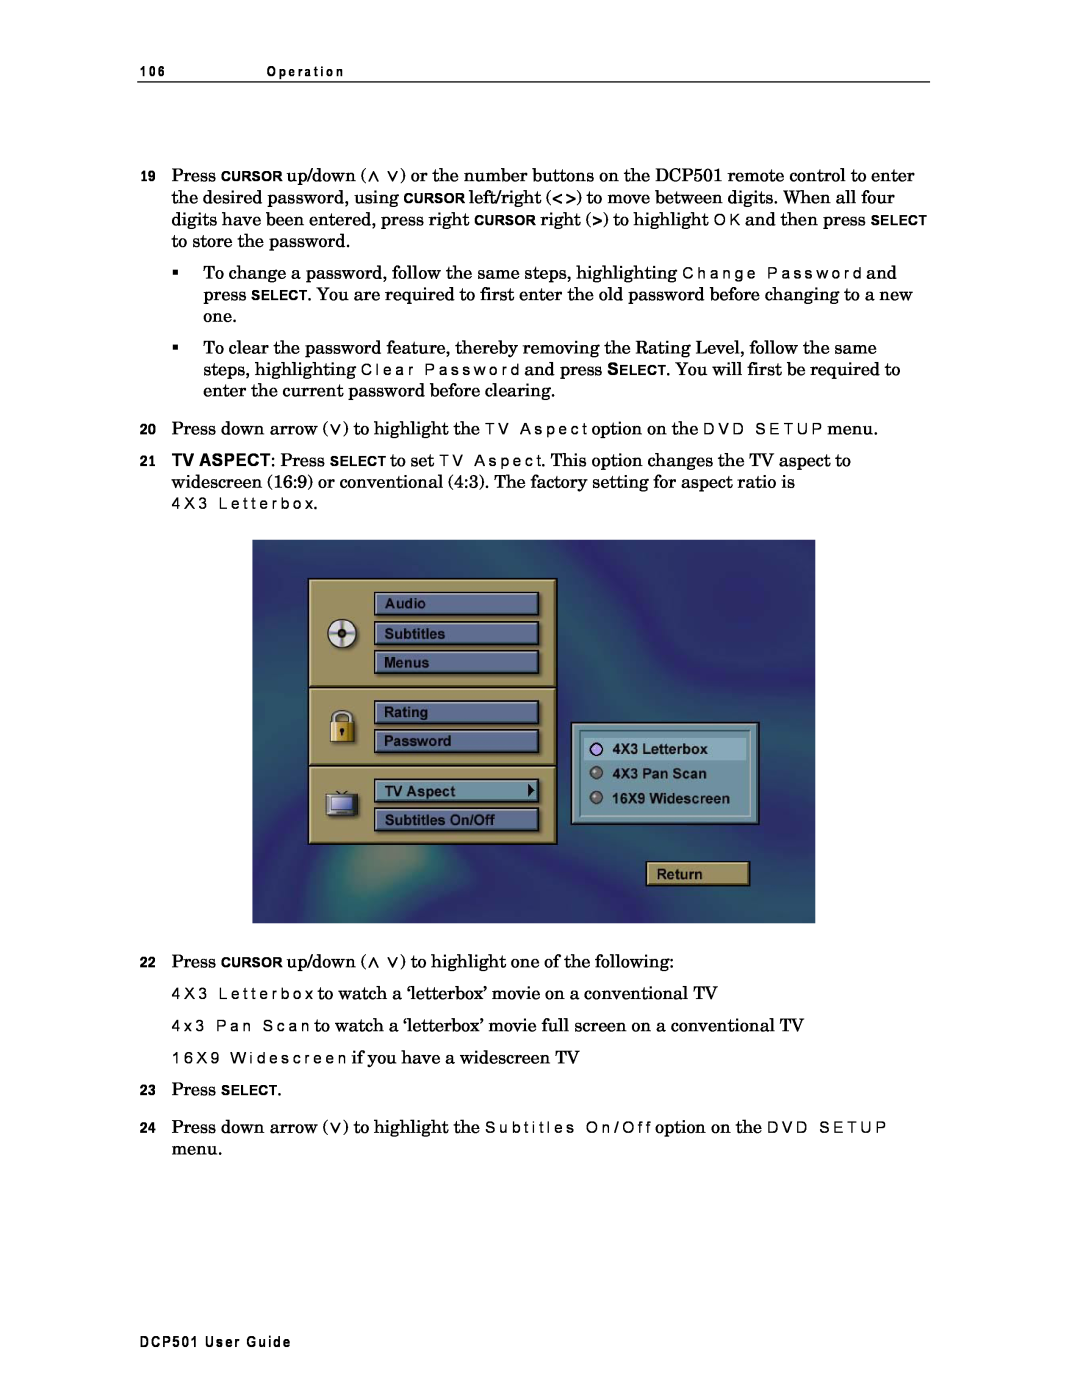 Motorola DCP501 manual 23Press SELECT 